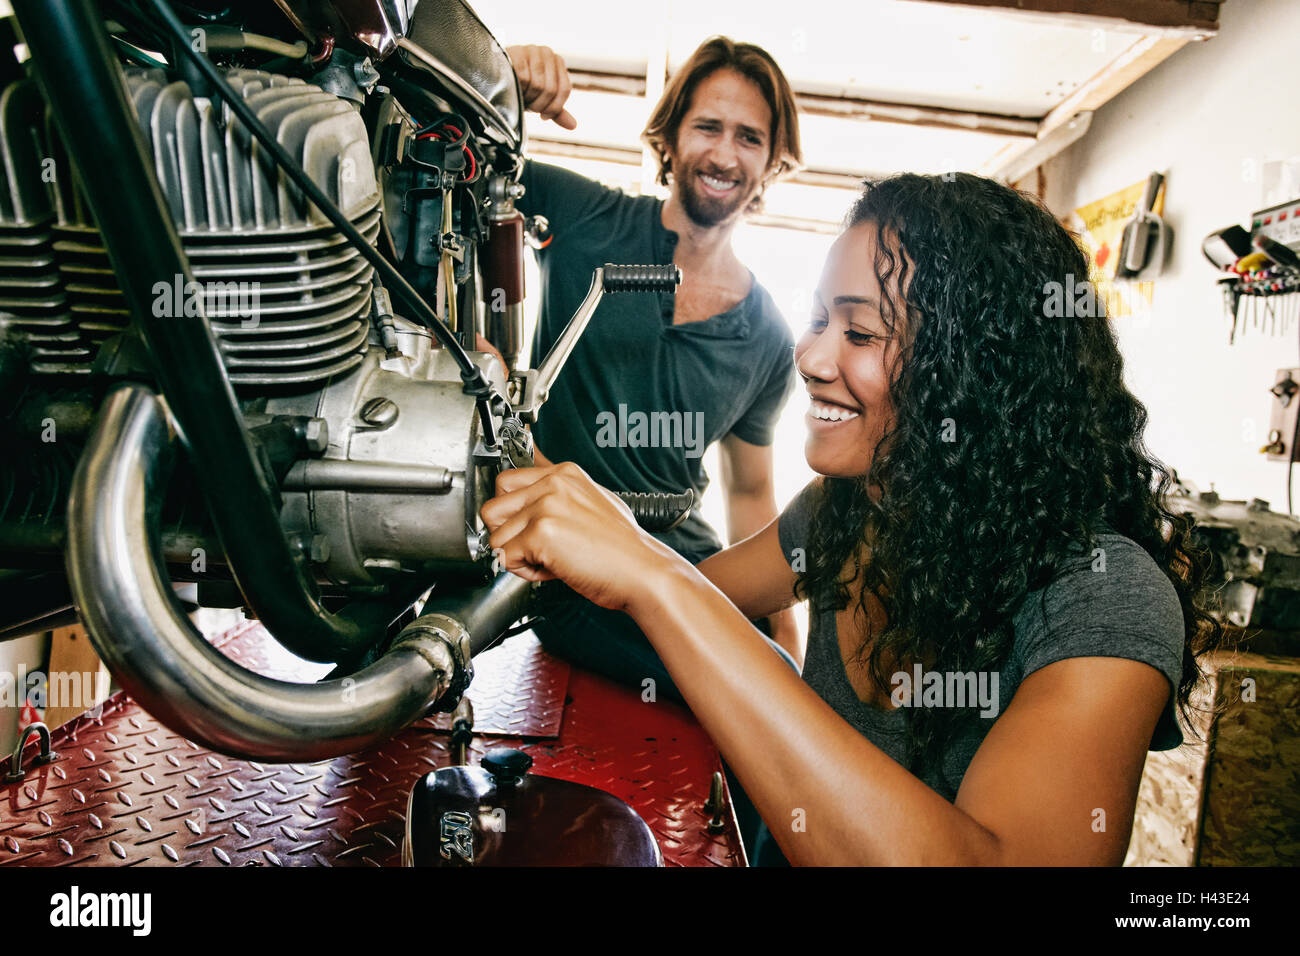 Man watching woman repairing motorcycle in garage Stock Photo